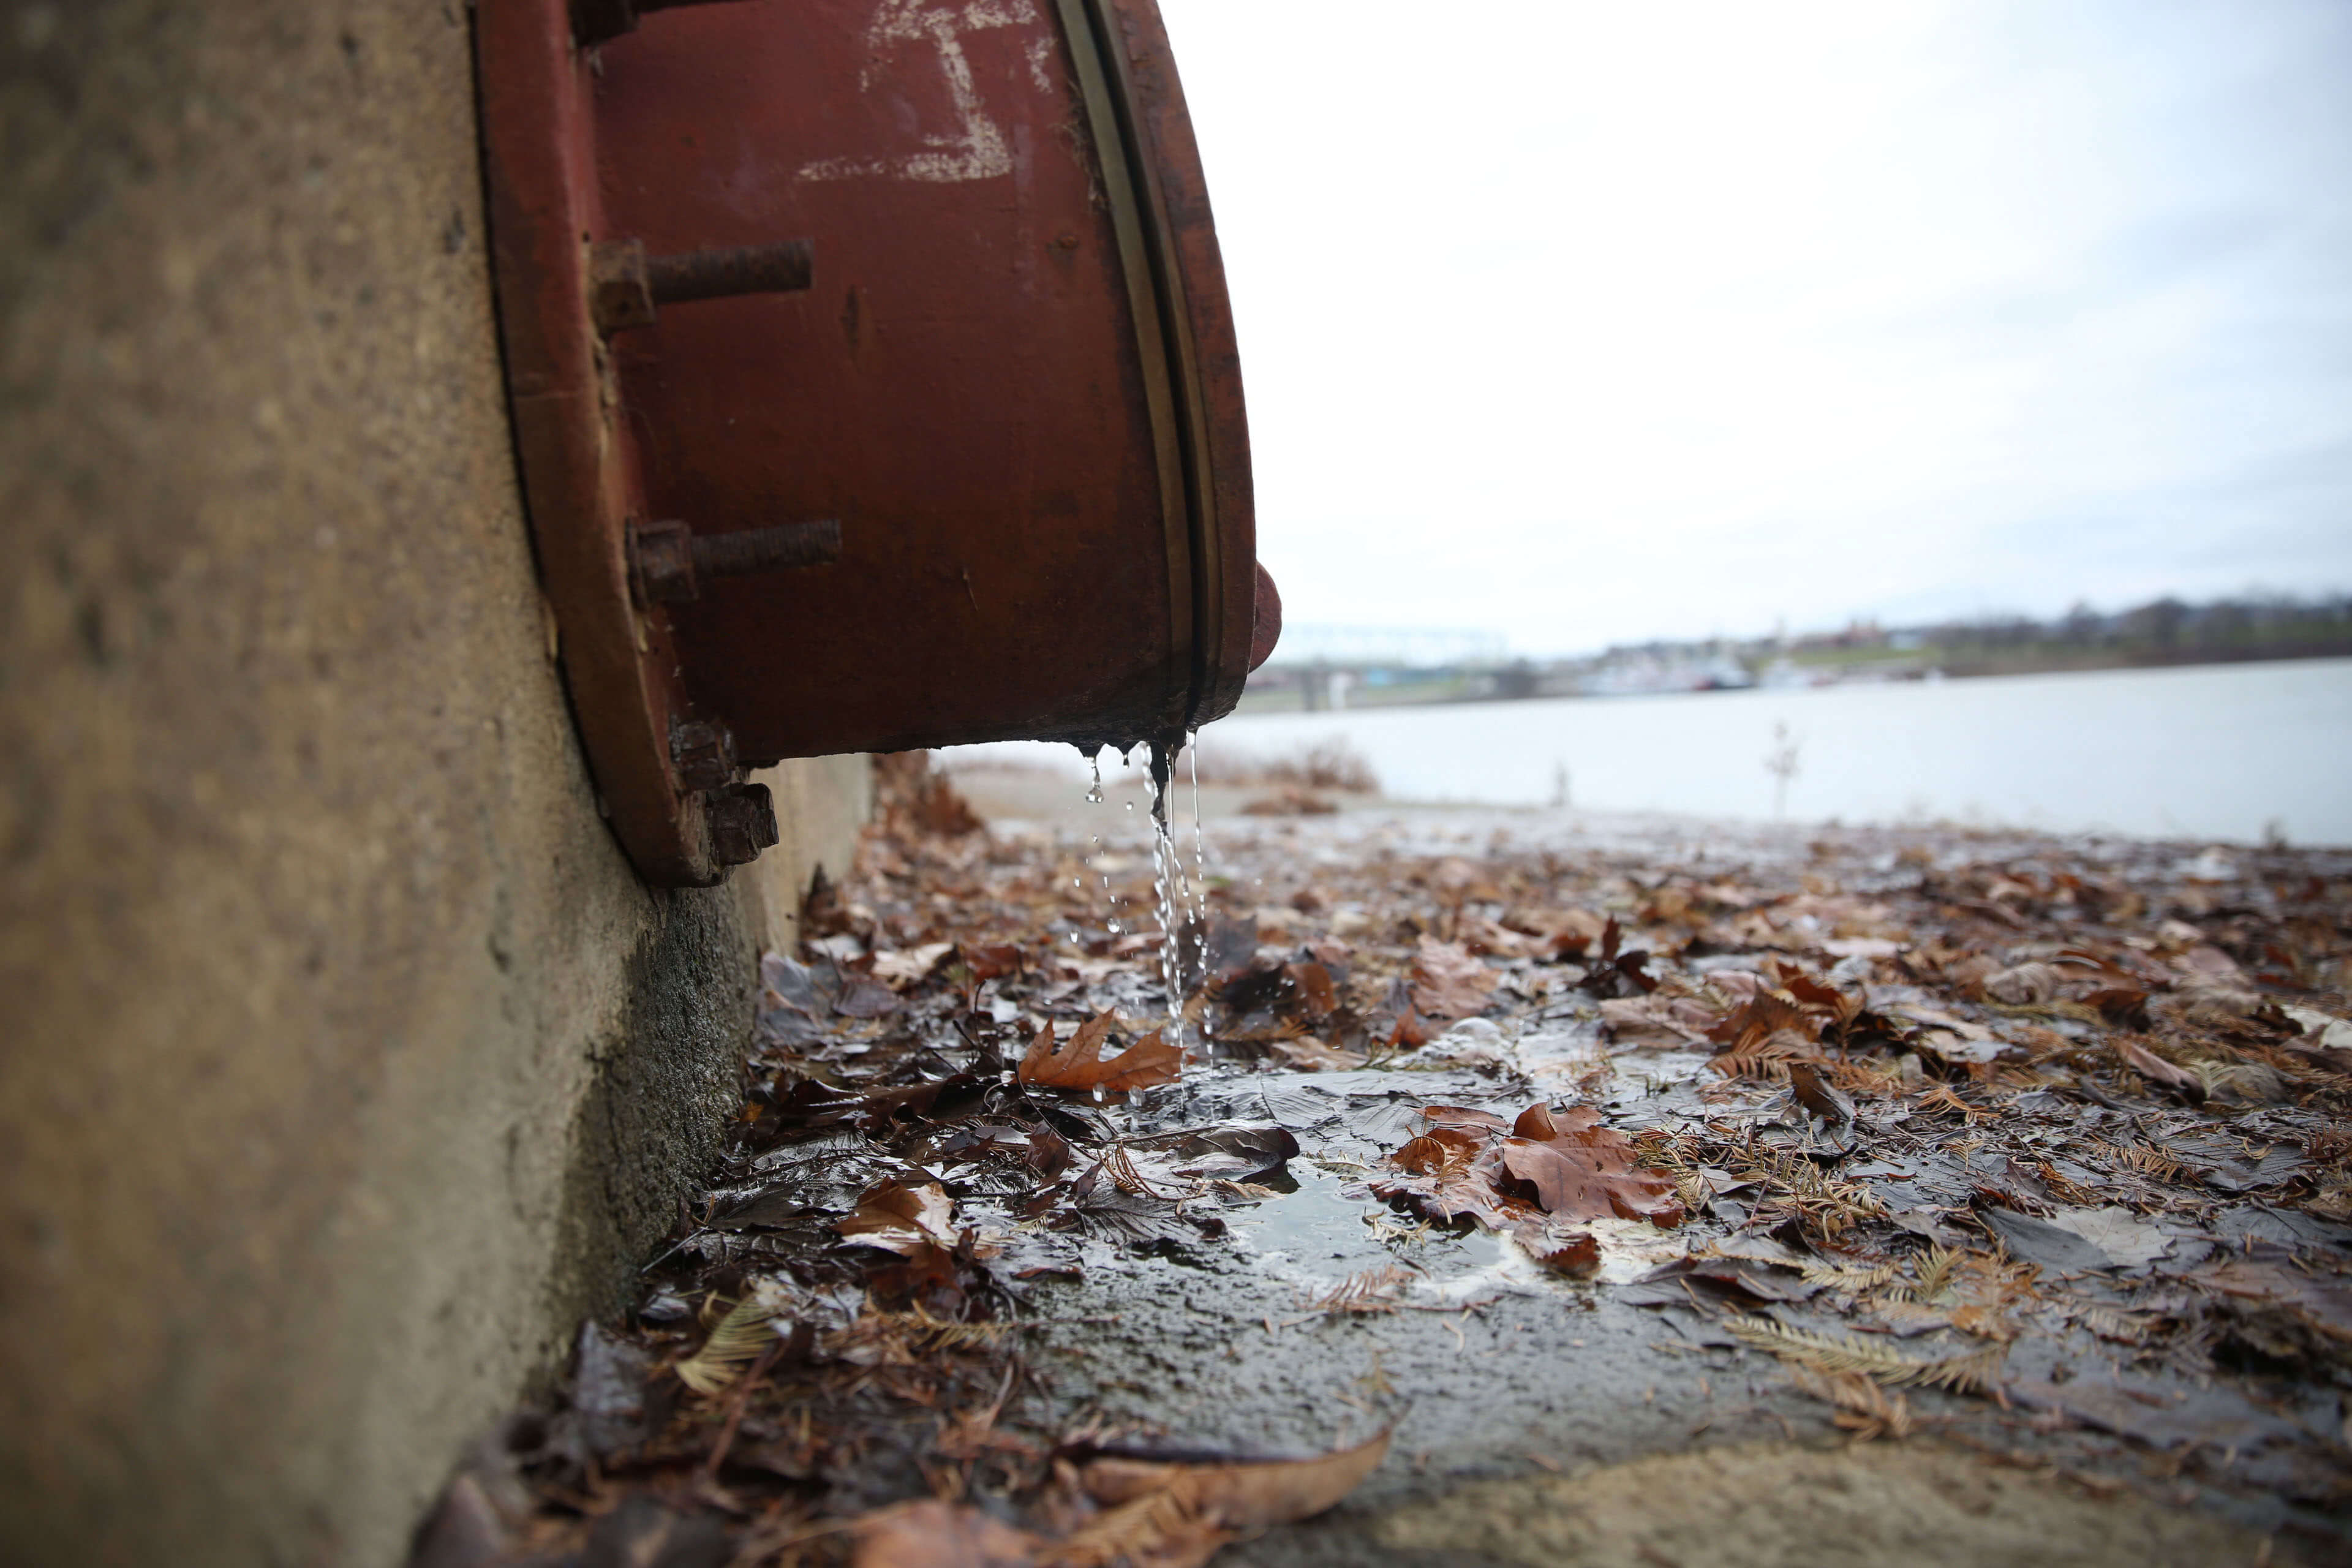 Drain pipe leaks along the Ohio River in Cincinnati, Ohio